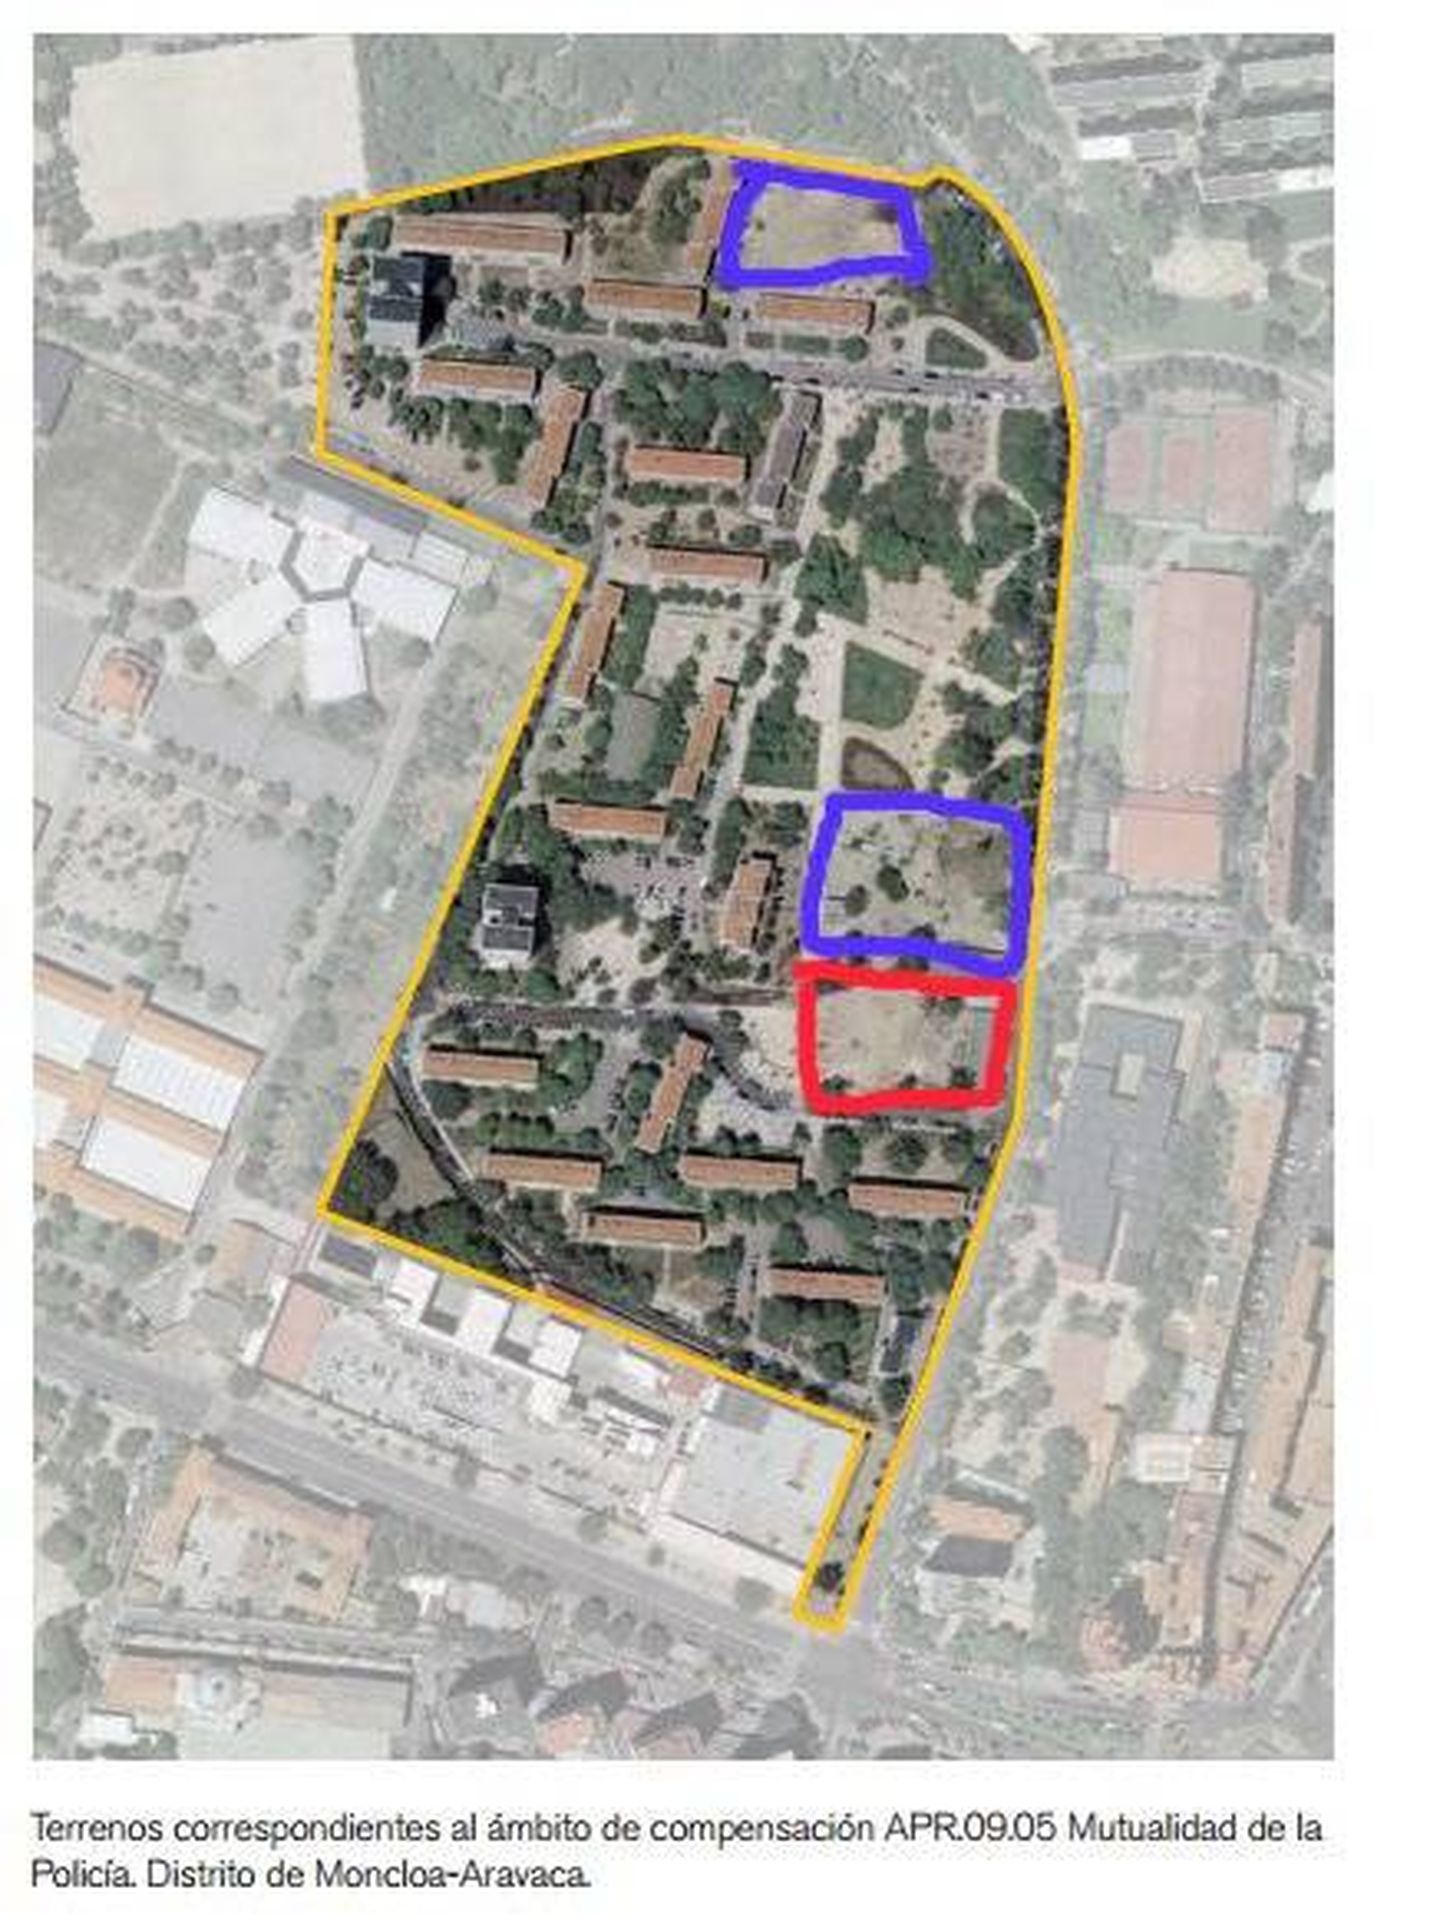 En azul, las parcelas que está intentando vender la Mutualidad de la Policía. En rojo, el terreno comprado por Vía Célere.